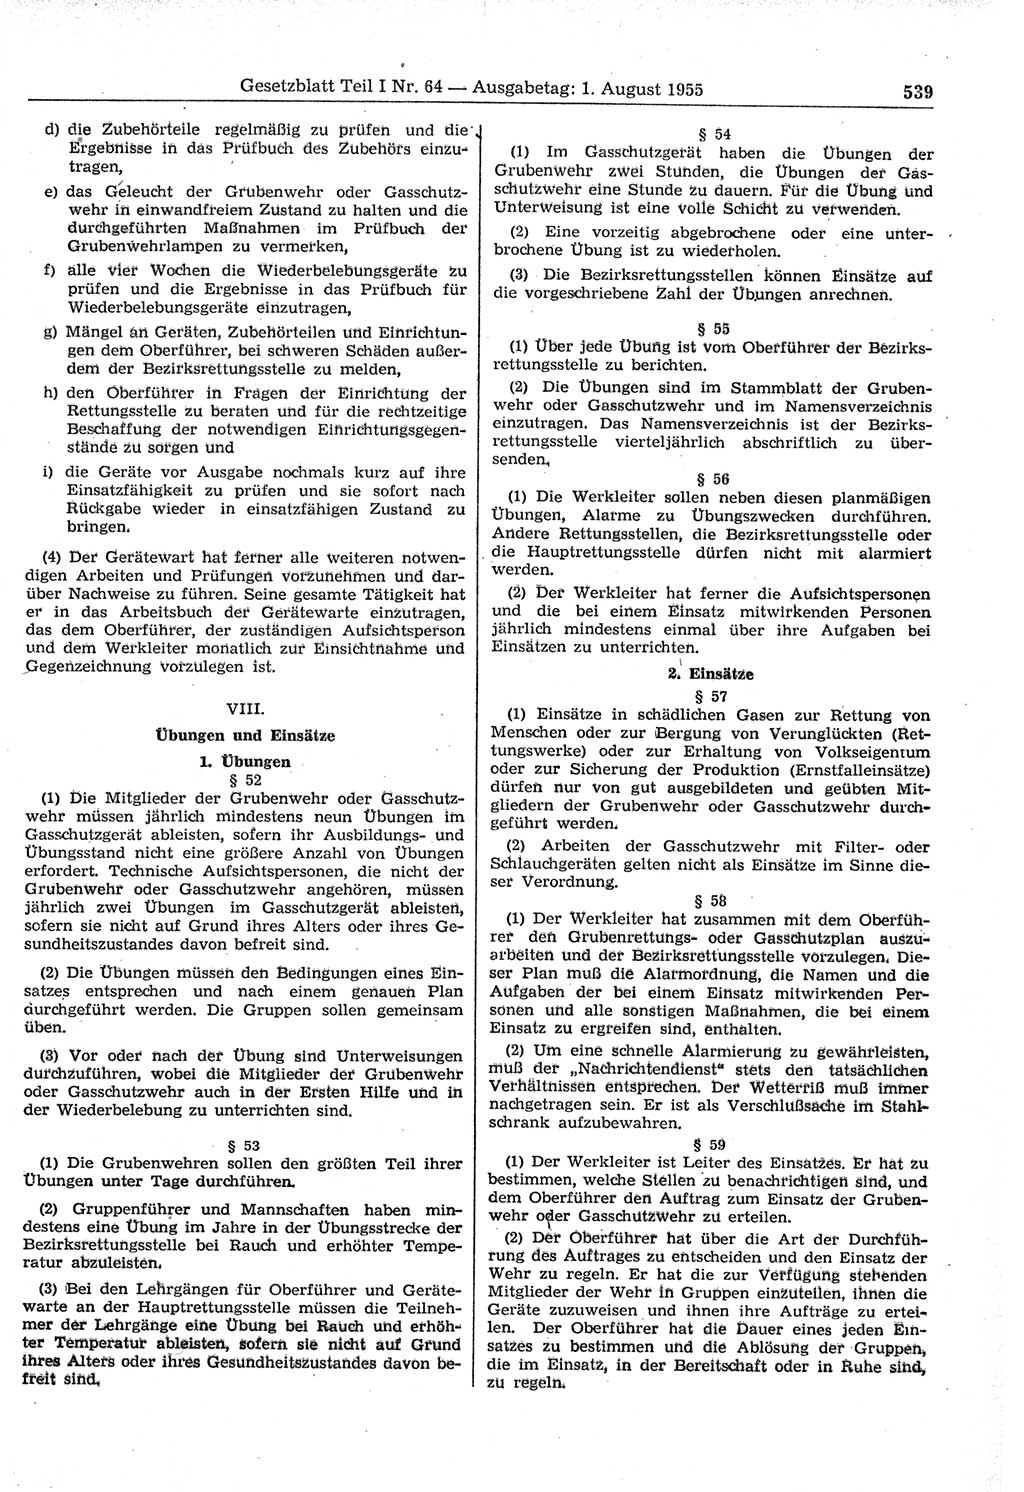 Gesetzblatt (GBl.) der Deutschen Demokratischen Republik (DDR) Teil Ⅰ 1955, Seite 539 (GBl. DDR Ⅰ 1955, S. 539)